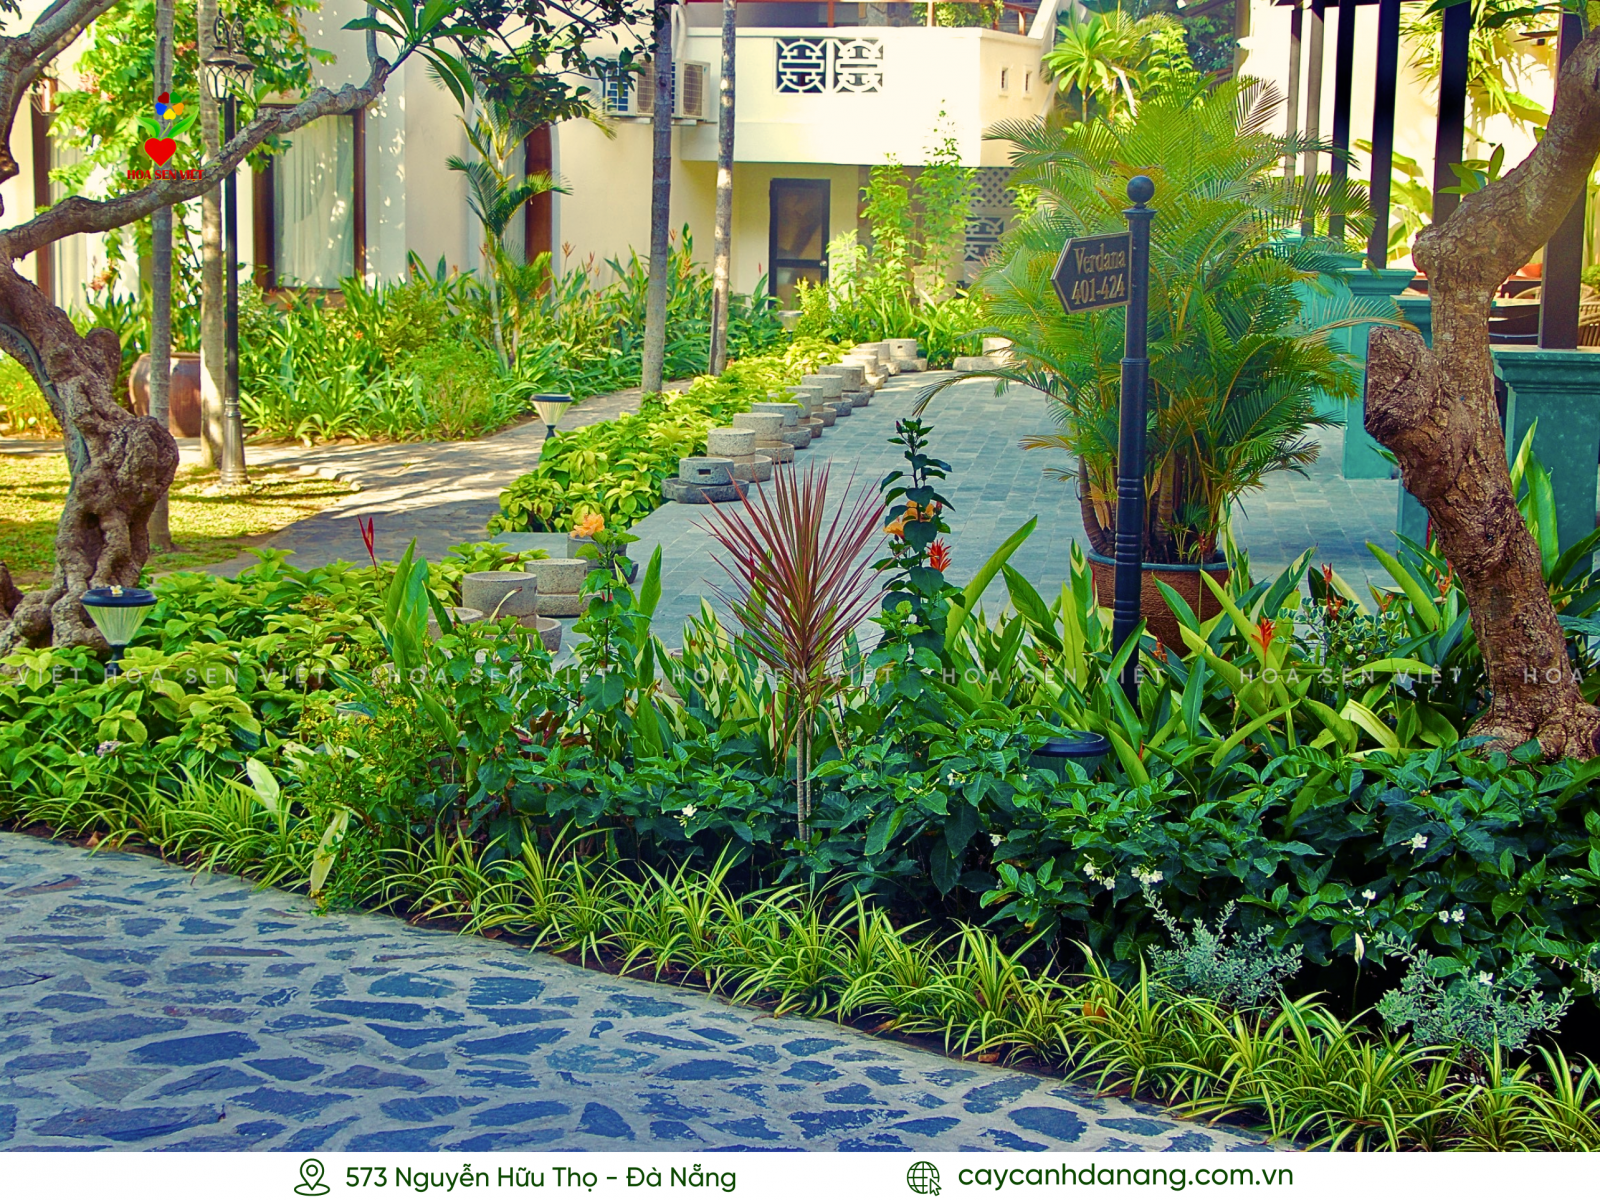 Bồn cây sân vườn nhiệt đới đẹp thường được trồng tại các resort, villa tại Đà Nẵng